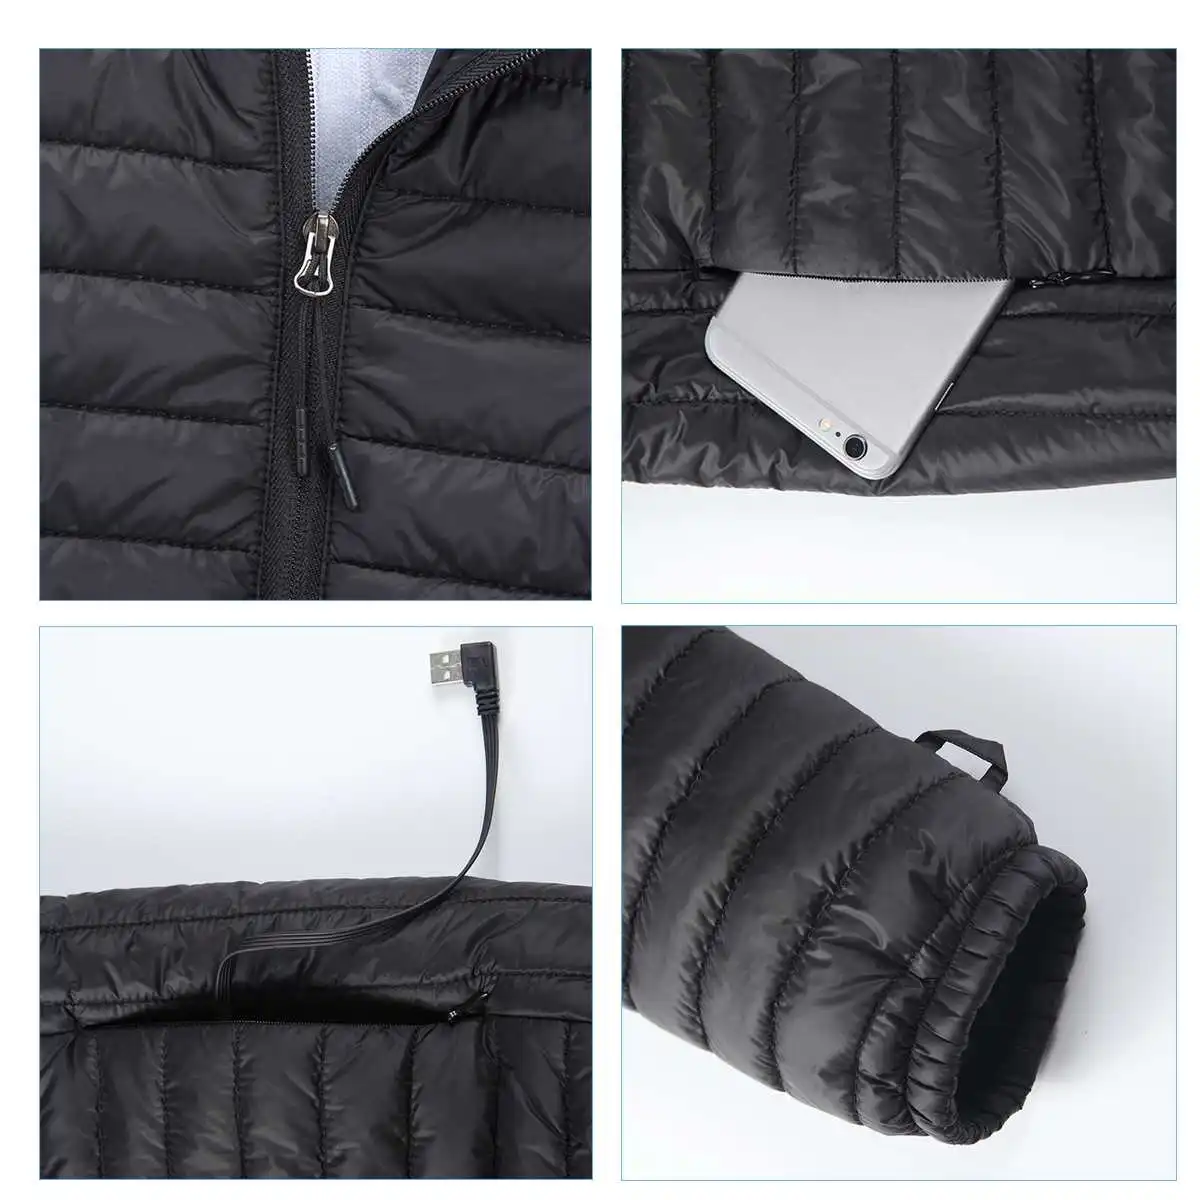 Мужской светильник USB, куртка с быстрым нагревом, зимняя, электрическая, водонепроницаемая, с контролем температуры, куртки для походов, кемпинга, походов, альпинизма